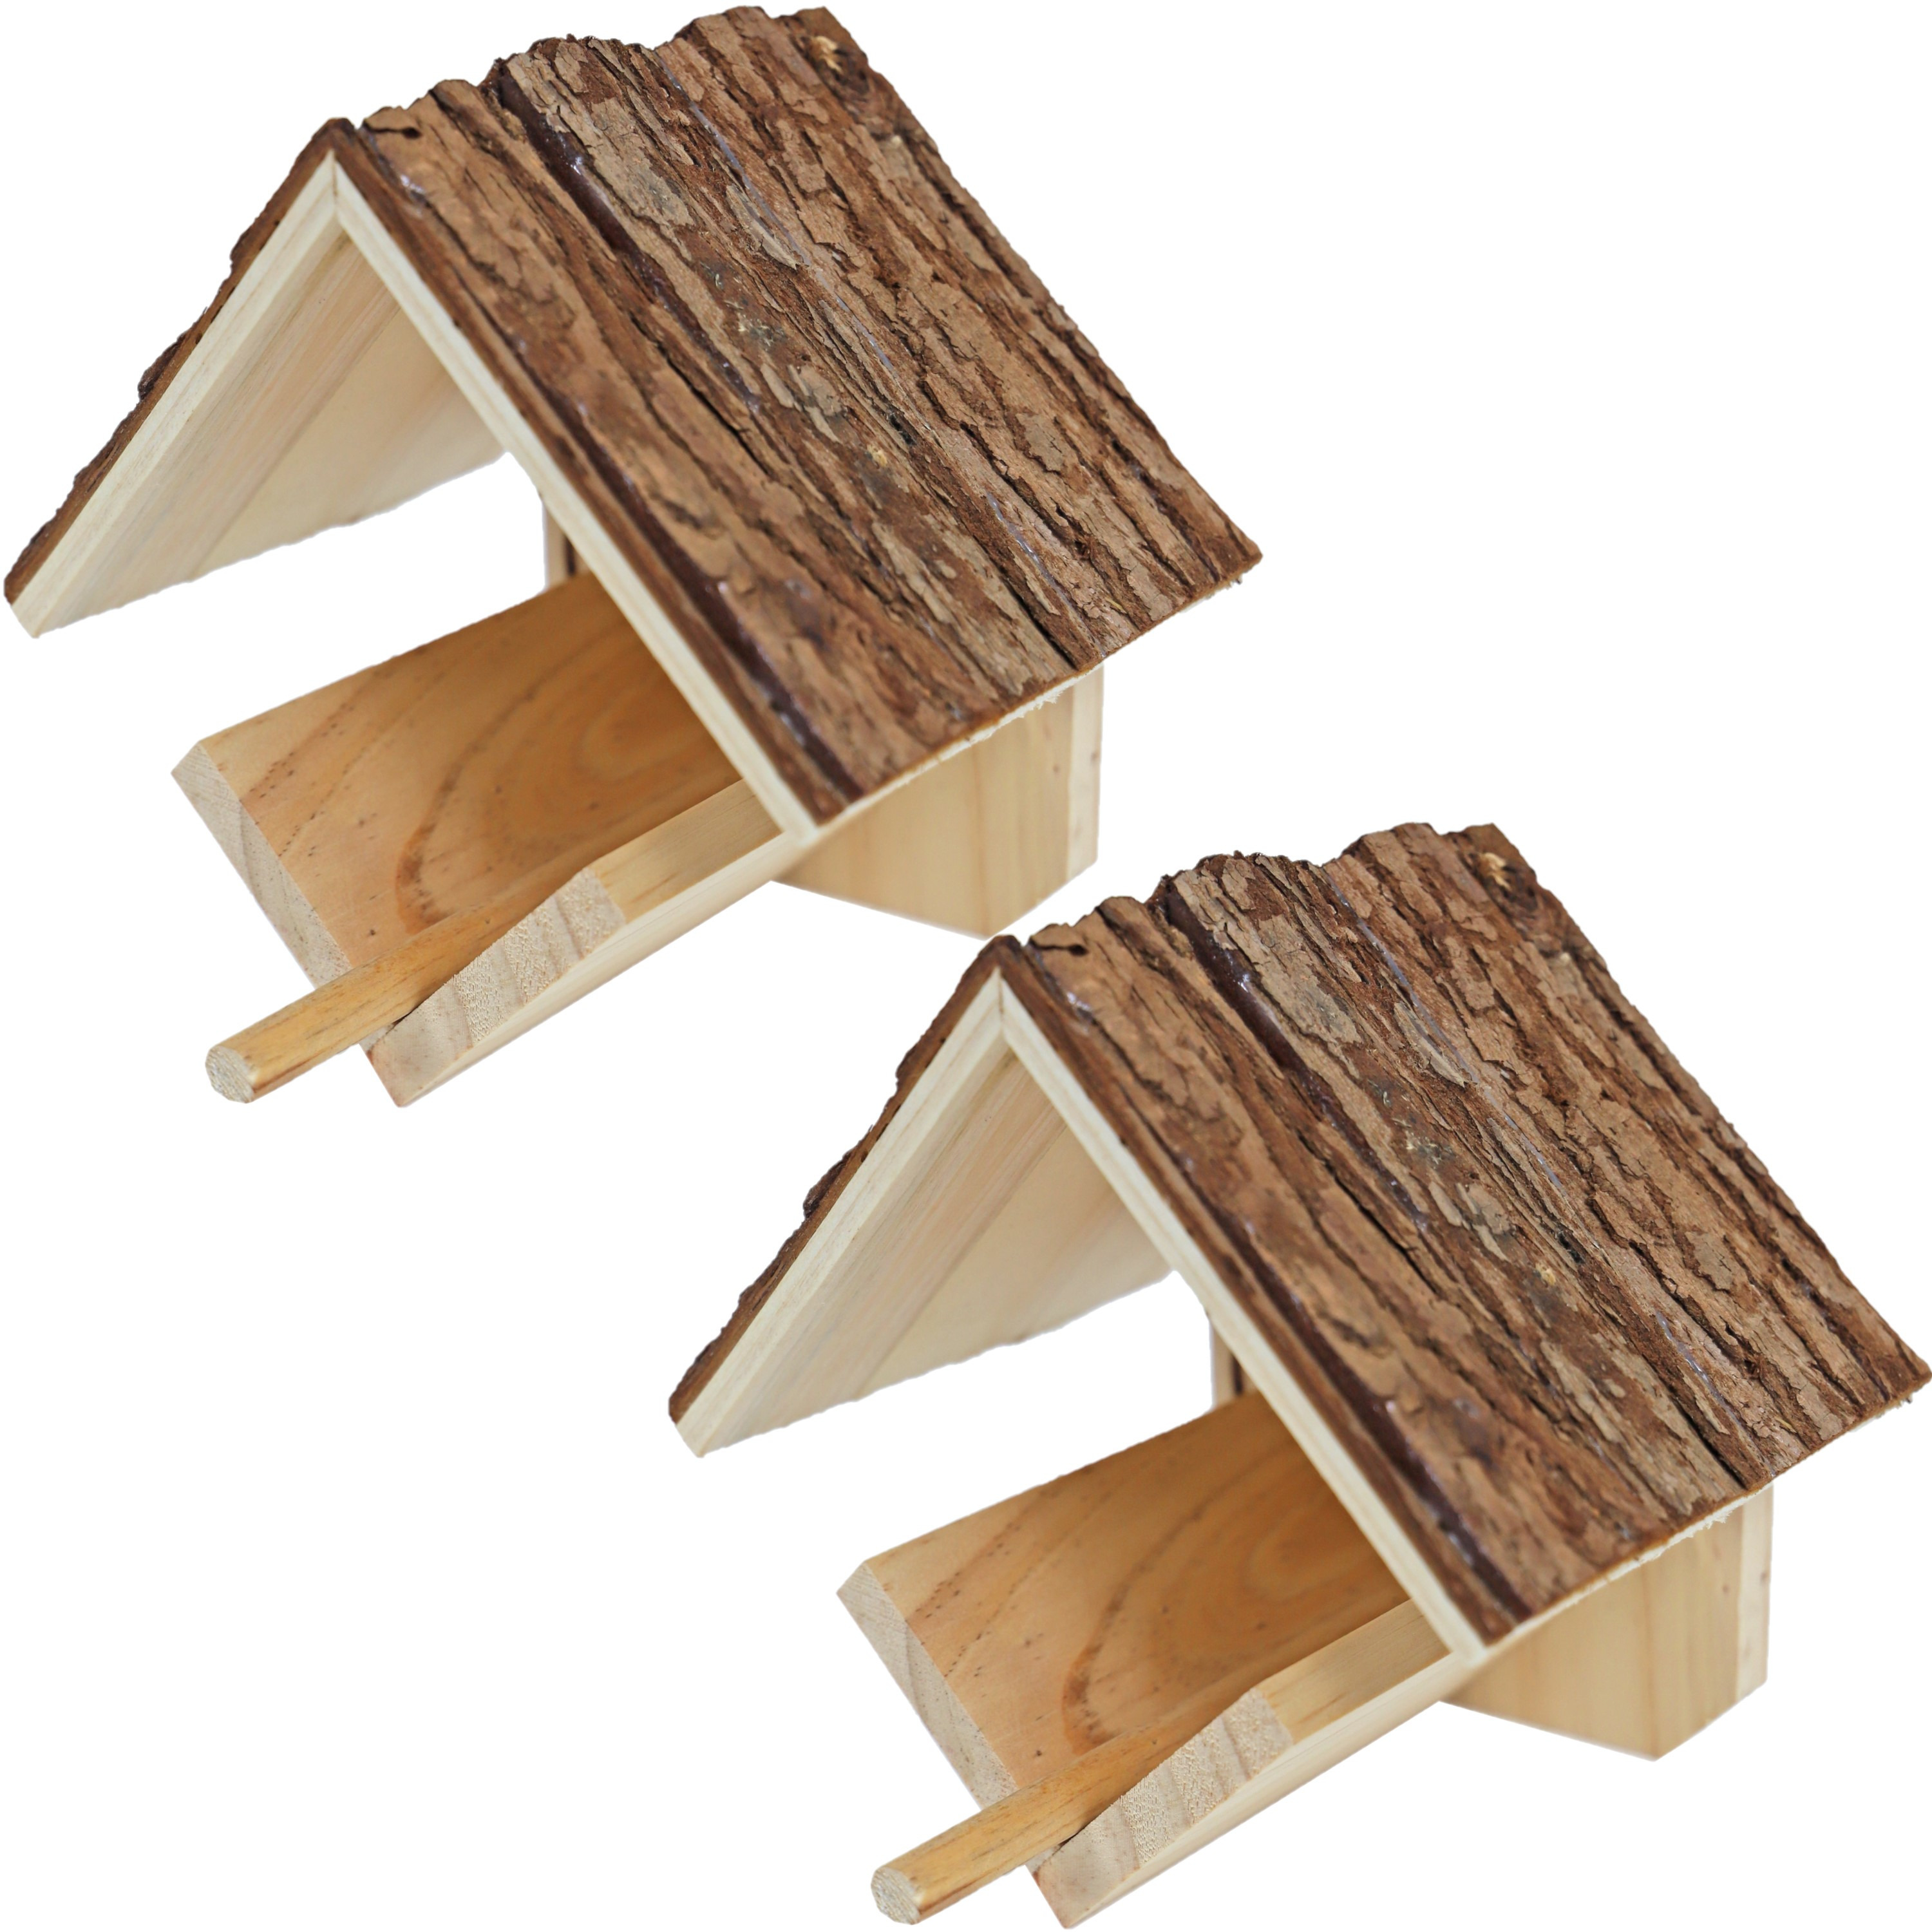 2x stuks vogelhuisje-voederhuisje-pindakaashuisje hout met dak van boomschors 16 cm